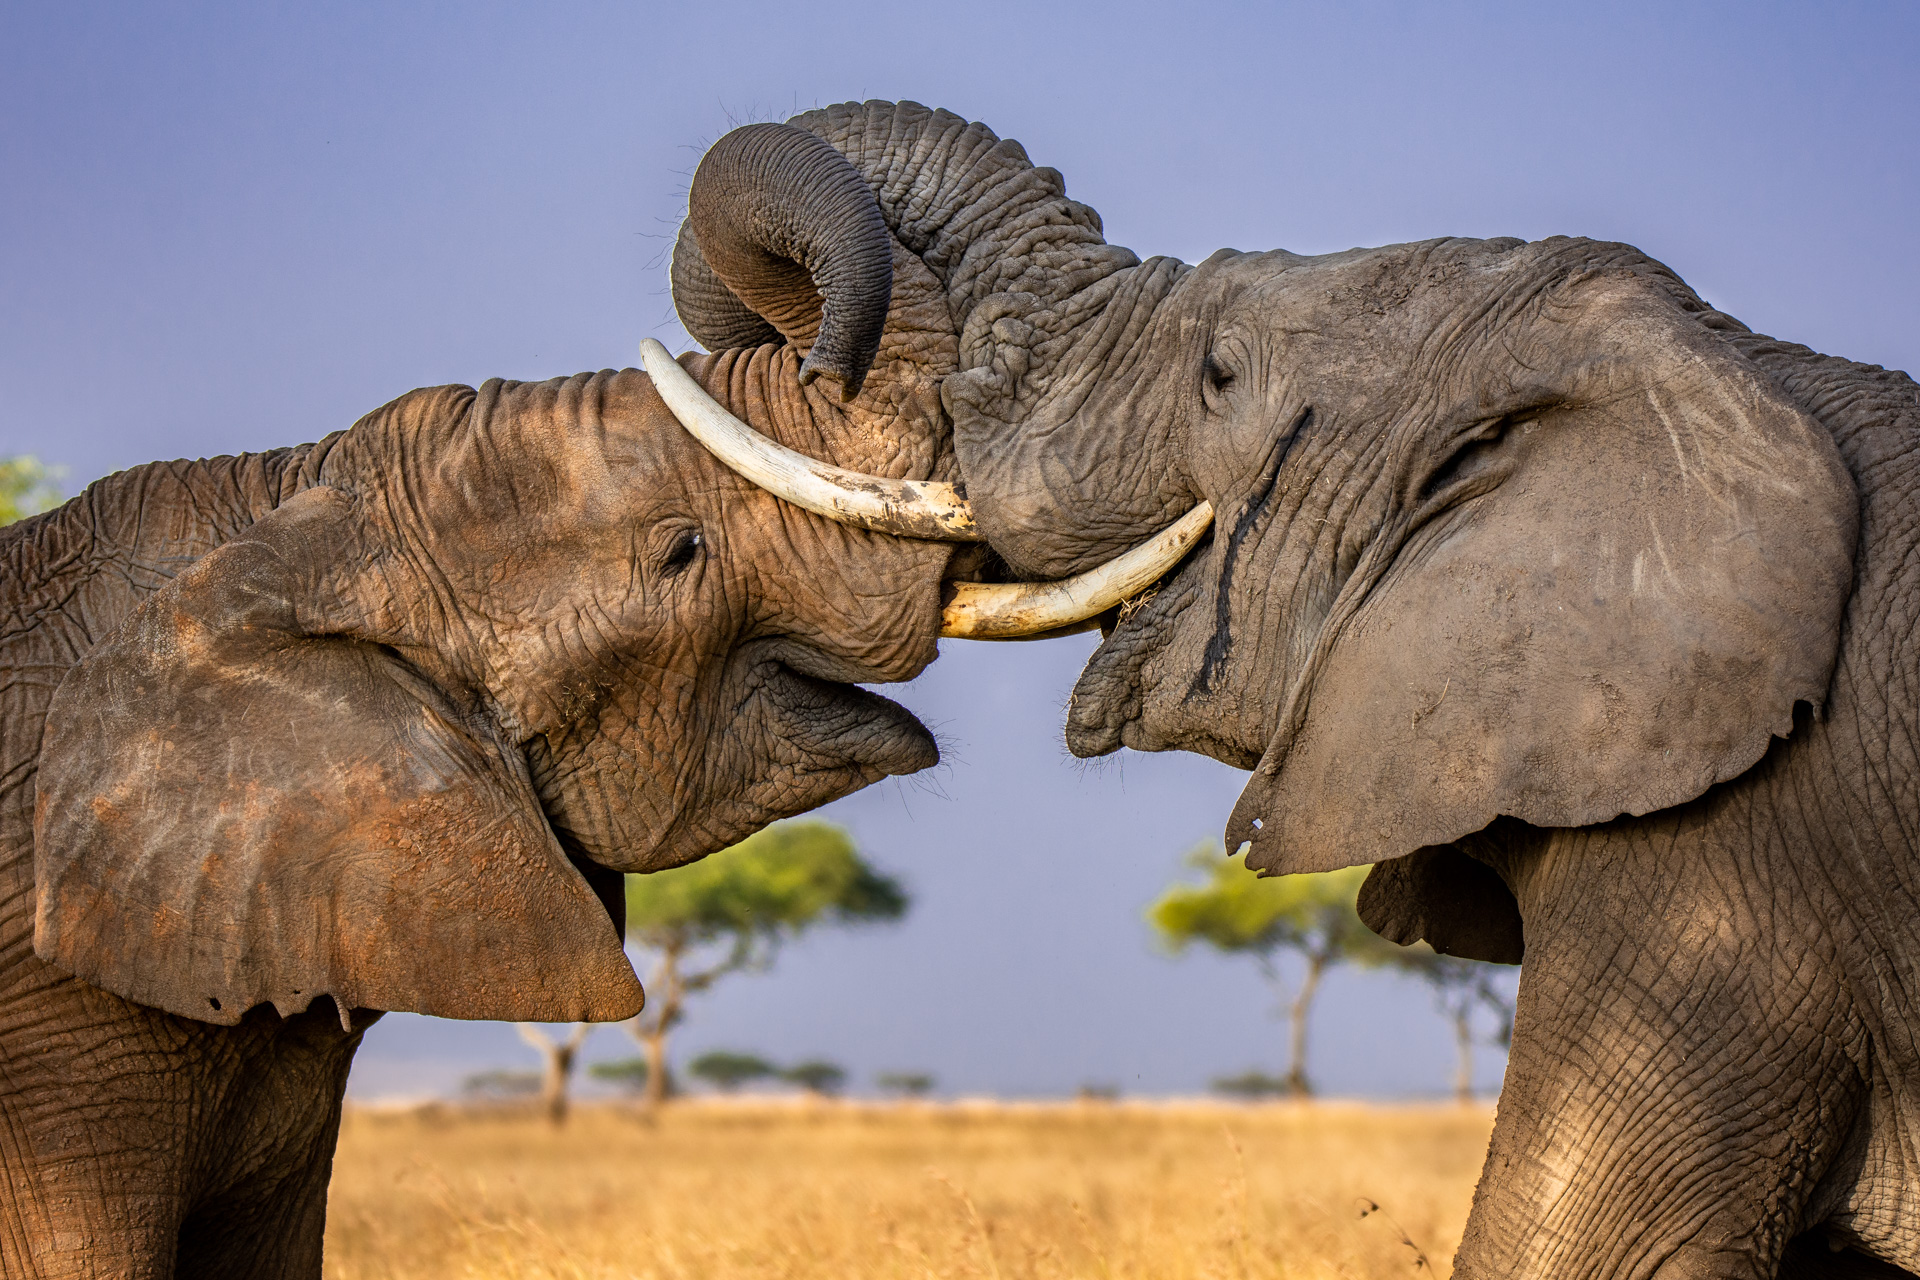 Elephant wrestle